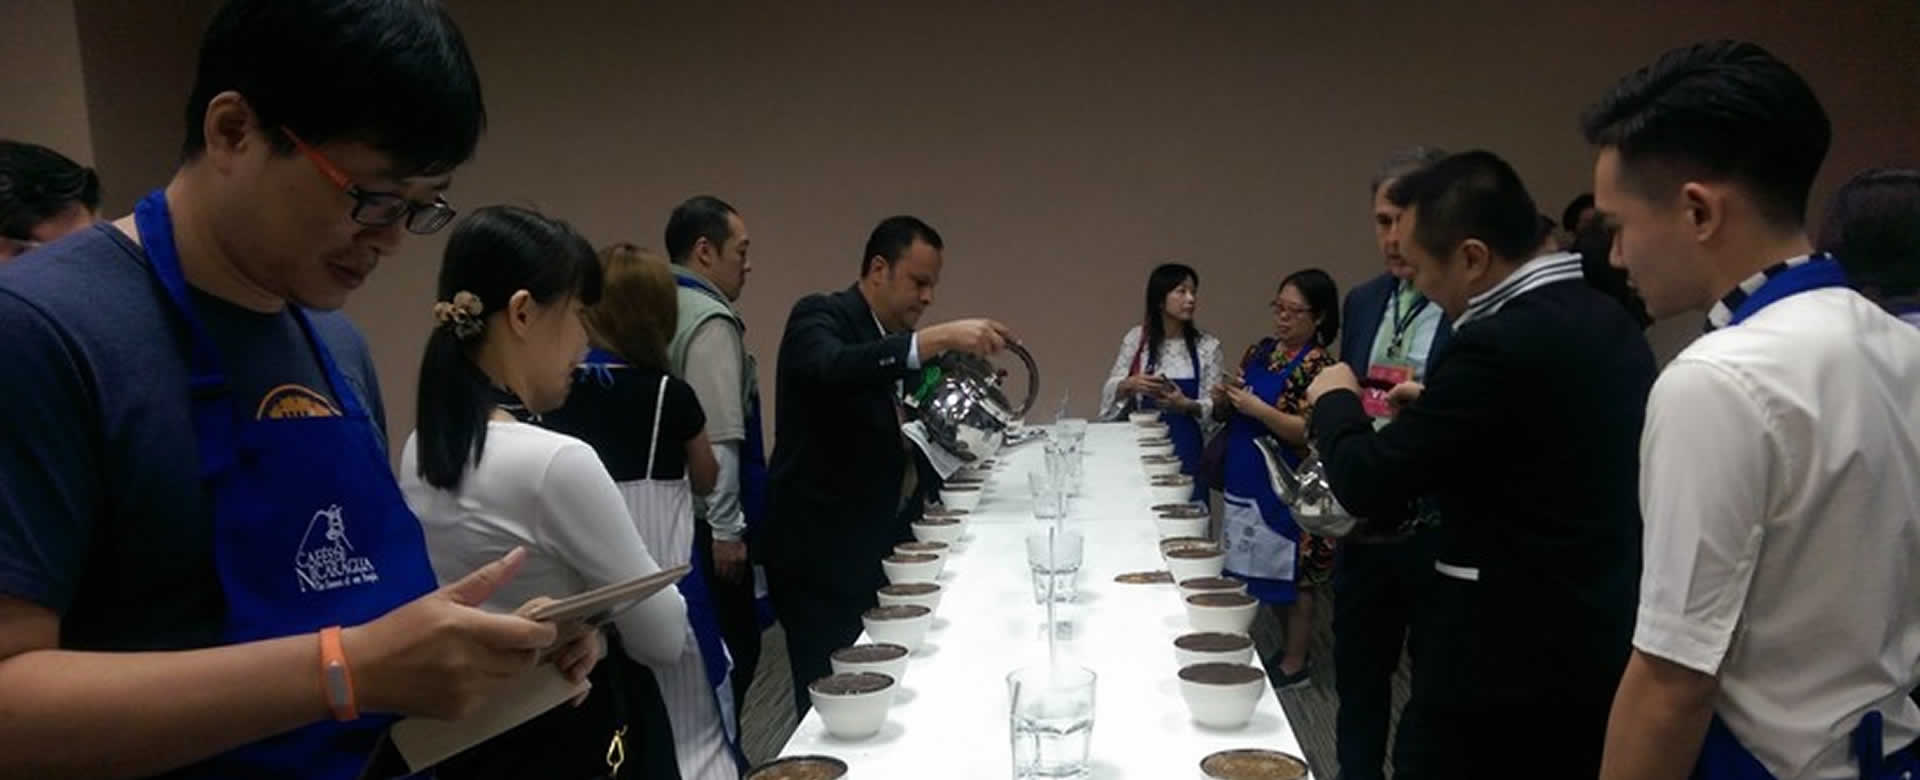 Nicaragua participa en la Exhibición Internacional de Té, Café y Vino